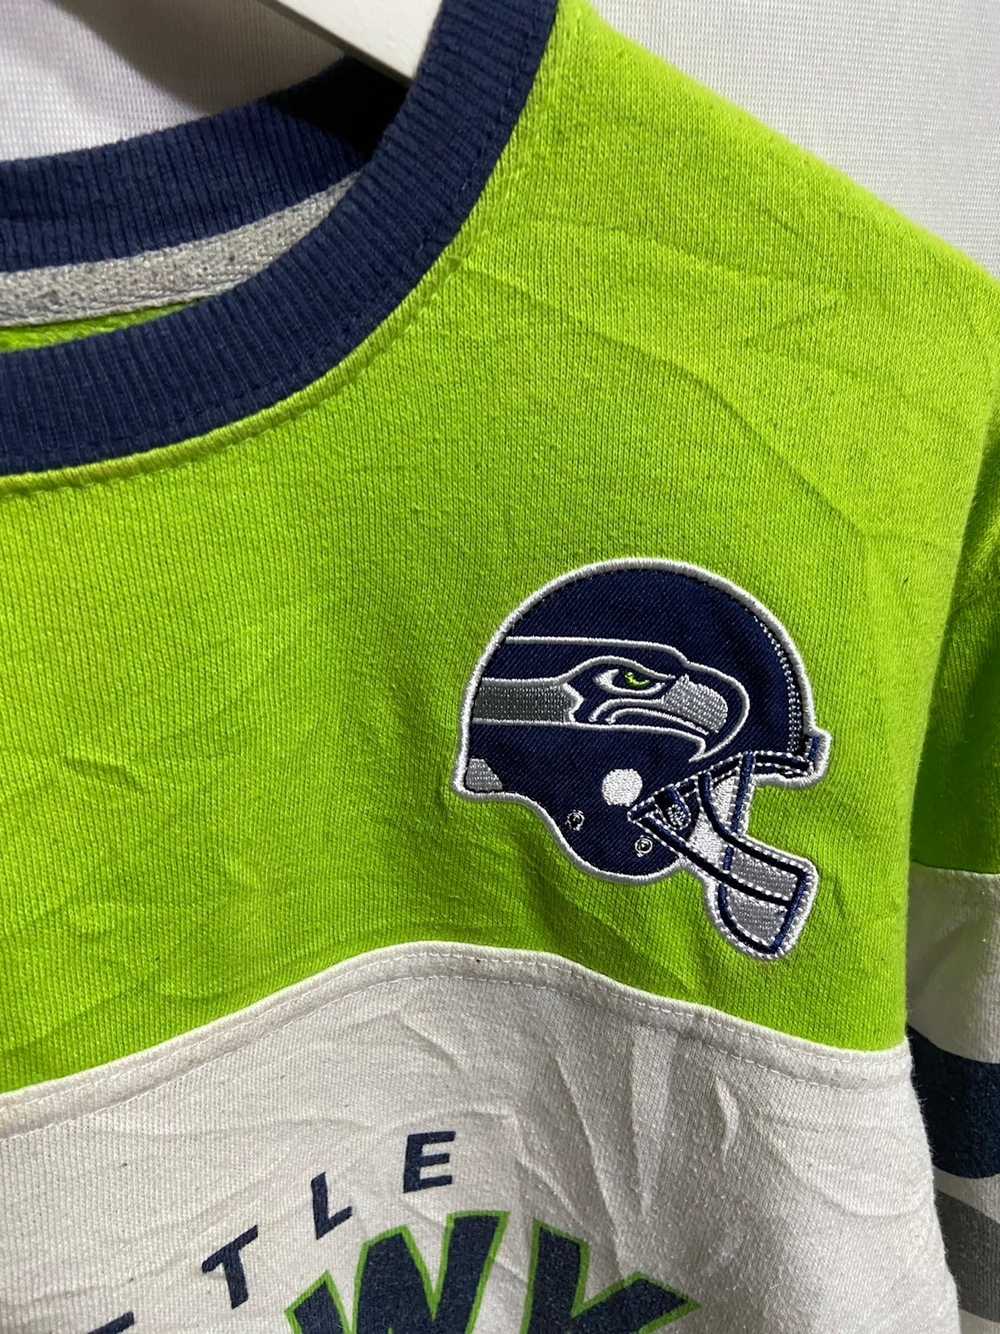 Vintage Vintage Seattle Seahawks Sweatshirt - image 3